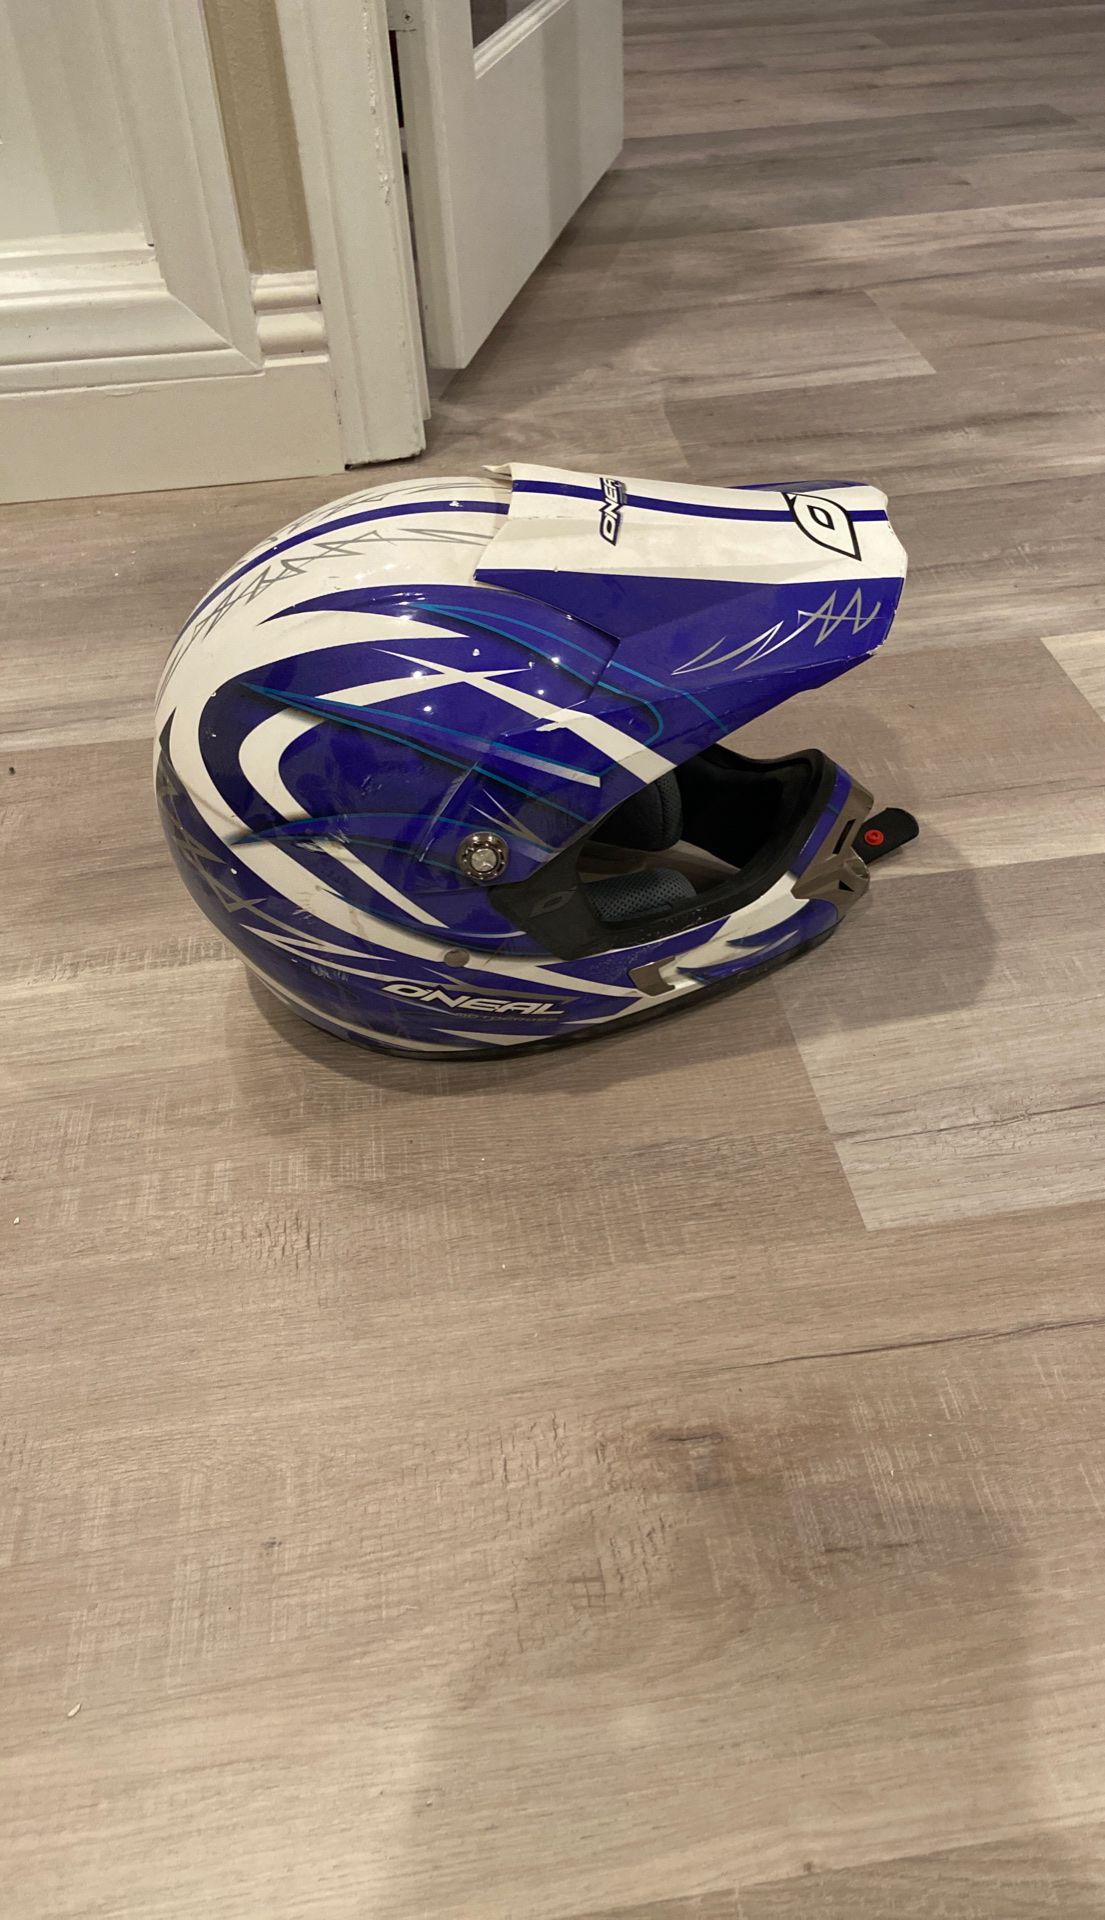 Helmet - O’Neil Medium size